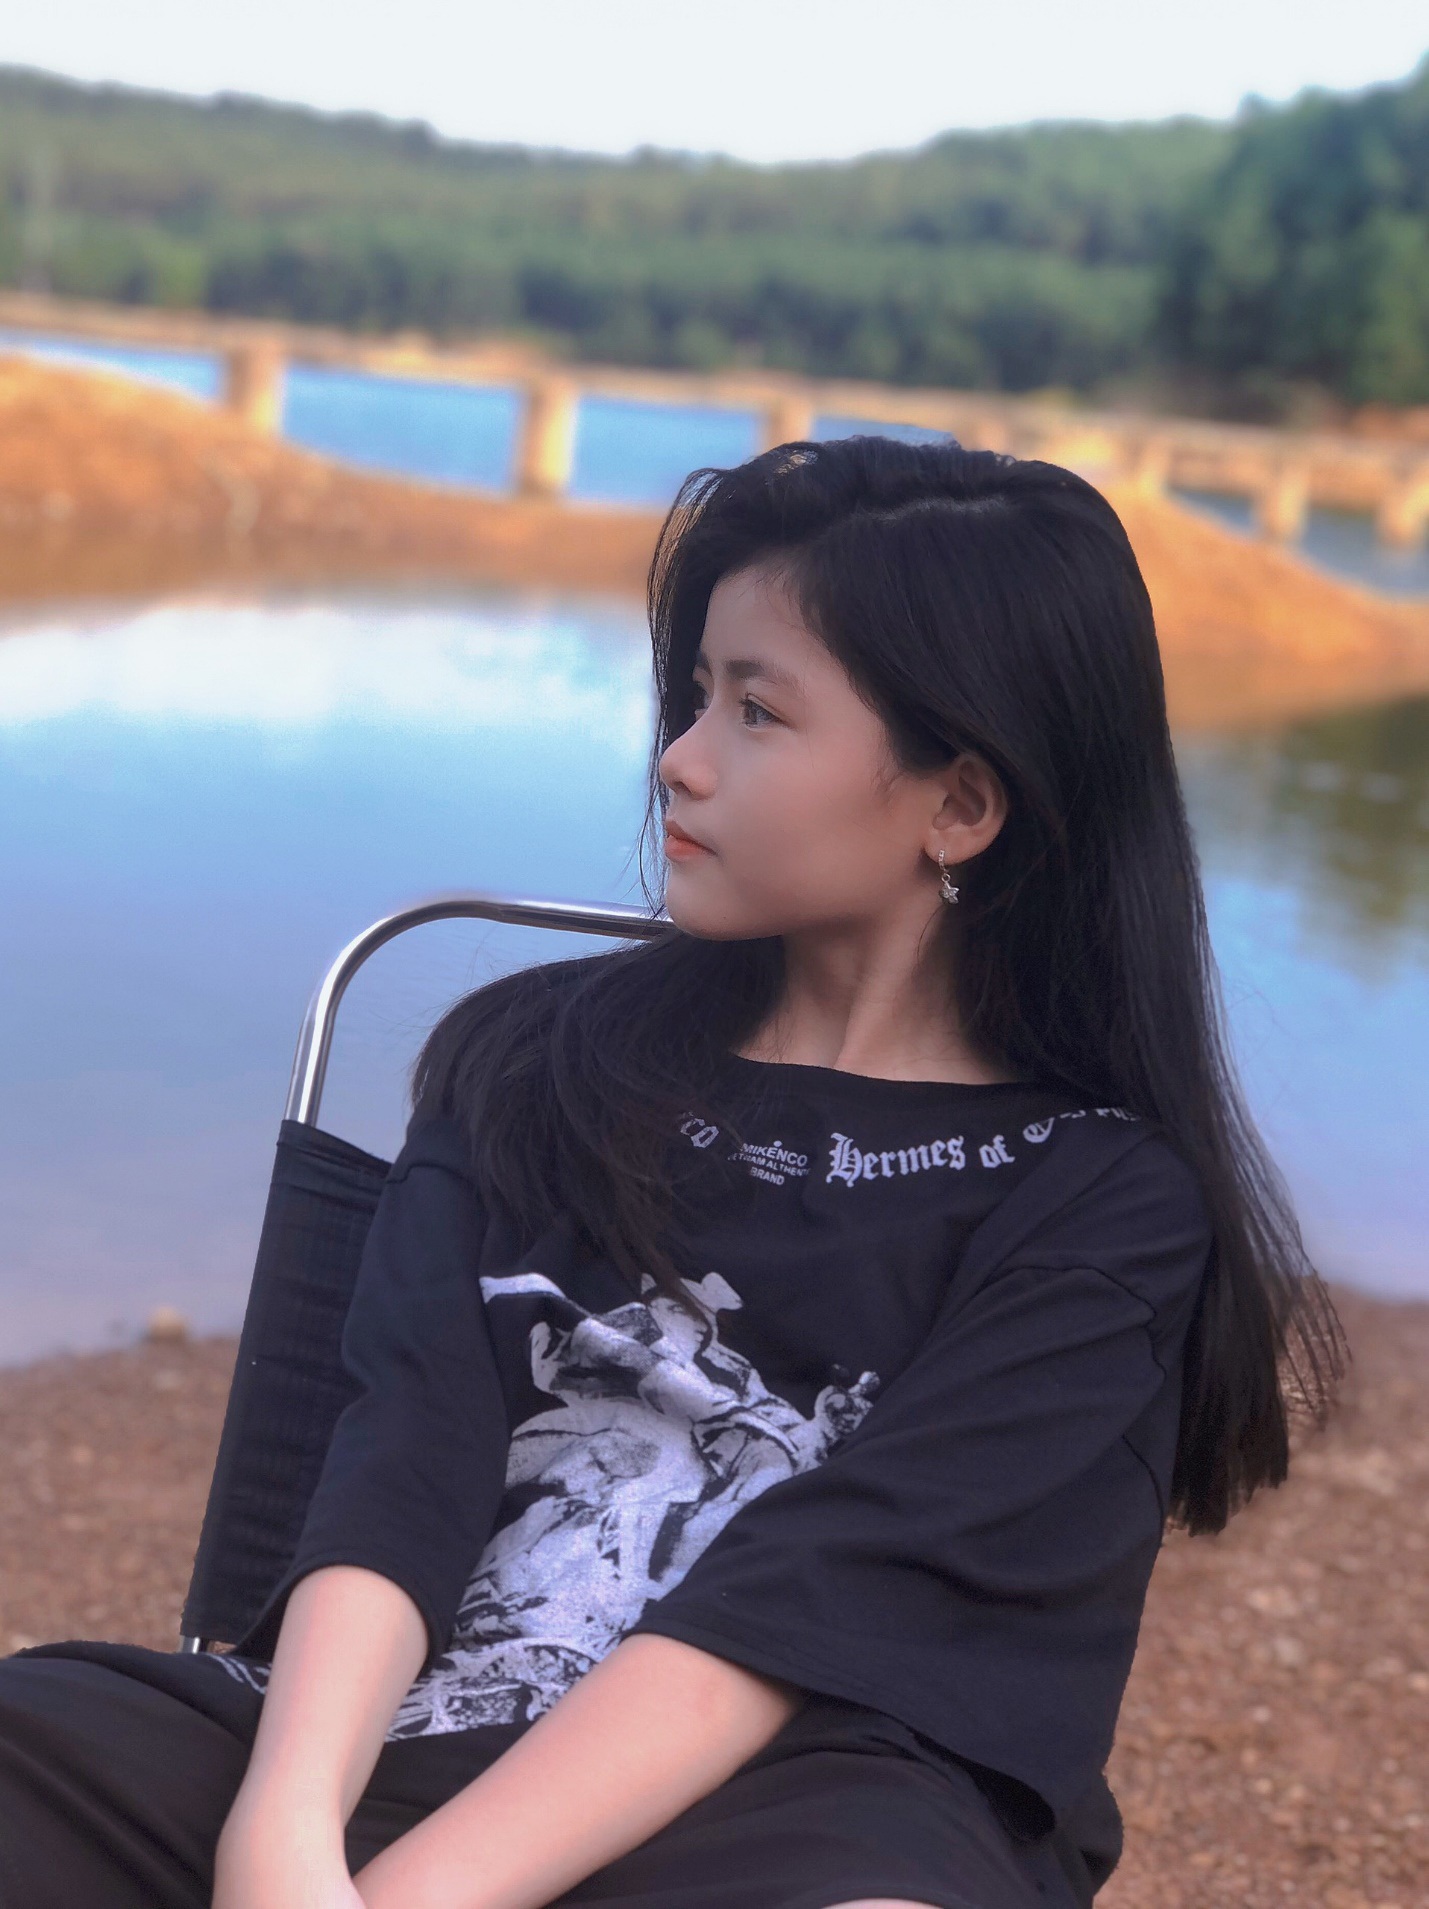 Bé gái xinh đẹp đến từ Nghệ An sẽ khiến bạn liên tưởng đến sự tinh tế và dịu dàng của miền Trung. Xem những hình ảnh tuyệt vời của cô bé này để cảm nhận được sự ôn hòa và gia đình của đất nước.